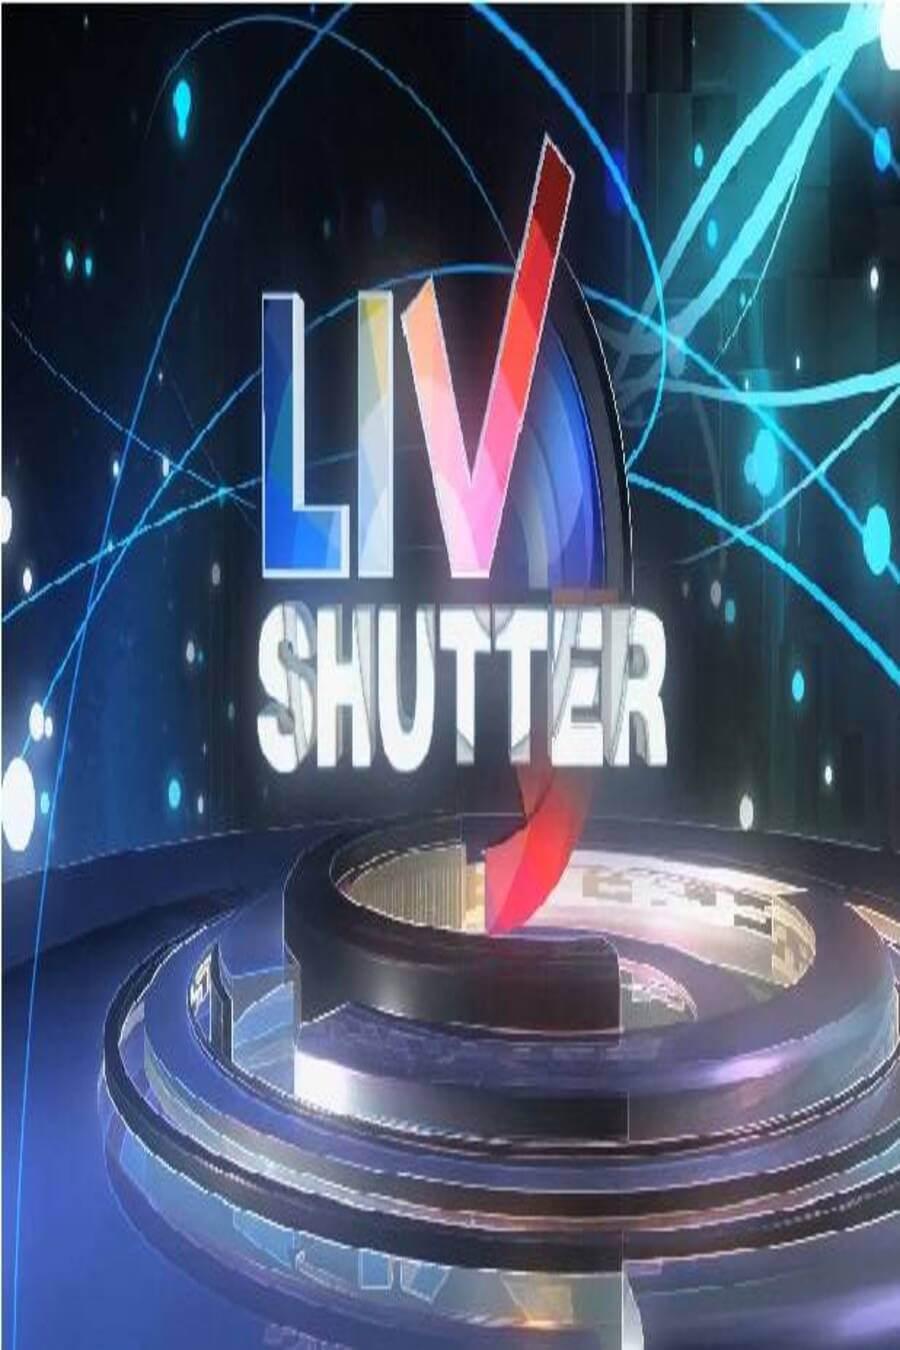 TV ratings for Livshutter in Thailand. SonyLIV TV series